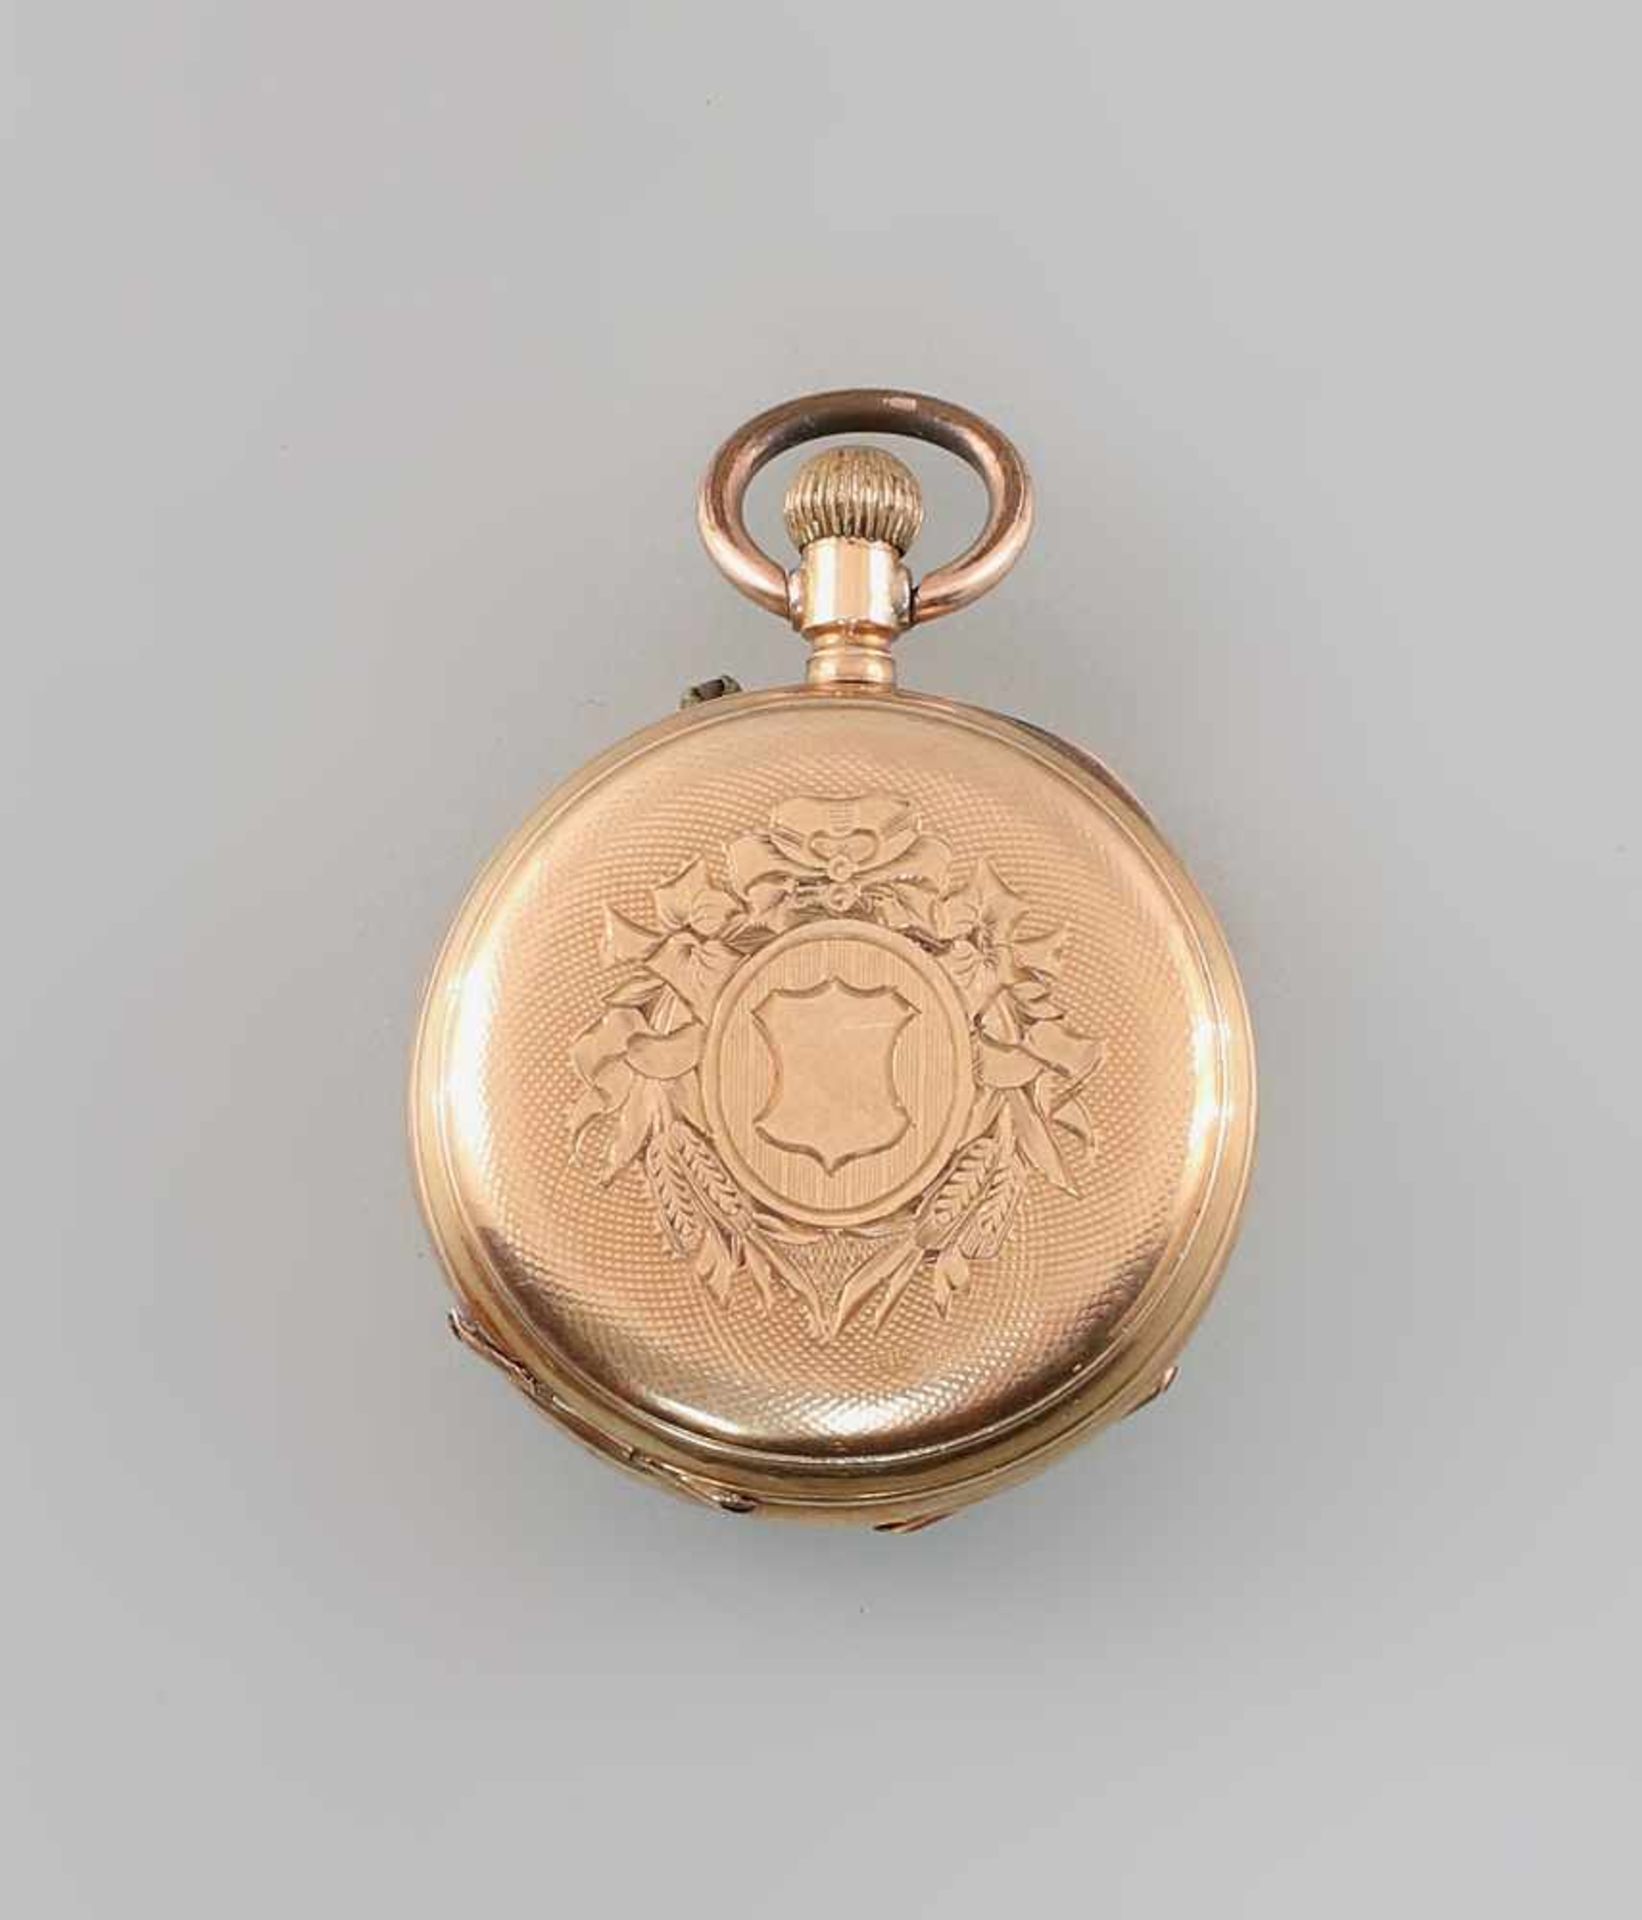 Goldene Damen-Taschenuhr um 1890, 585er Gold, gepunzt K14, Zylinderwerk, Email-Zifferblatt mit - Bild 2 aus 3